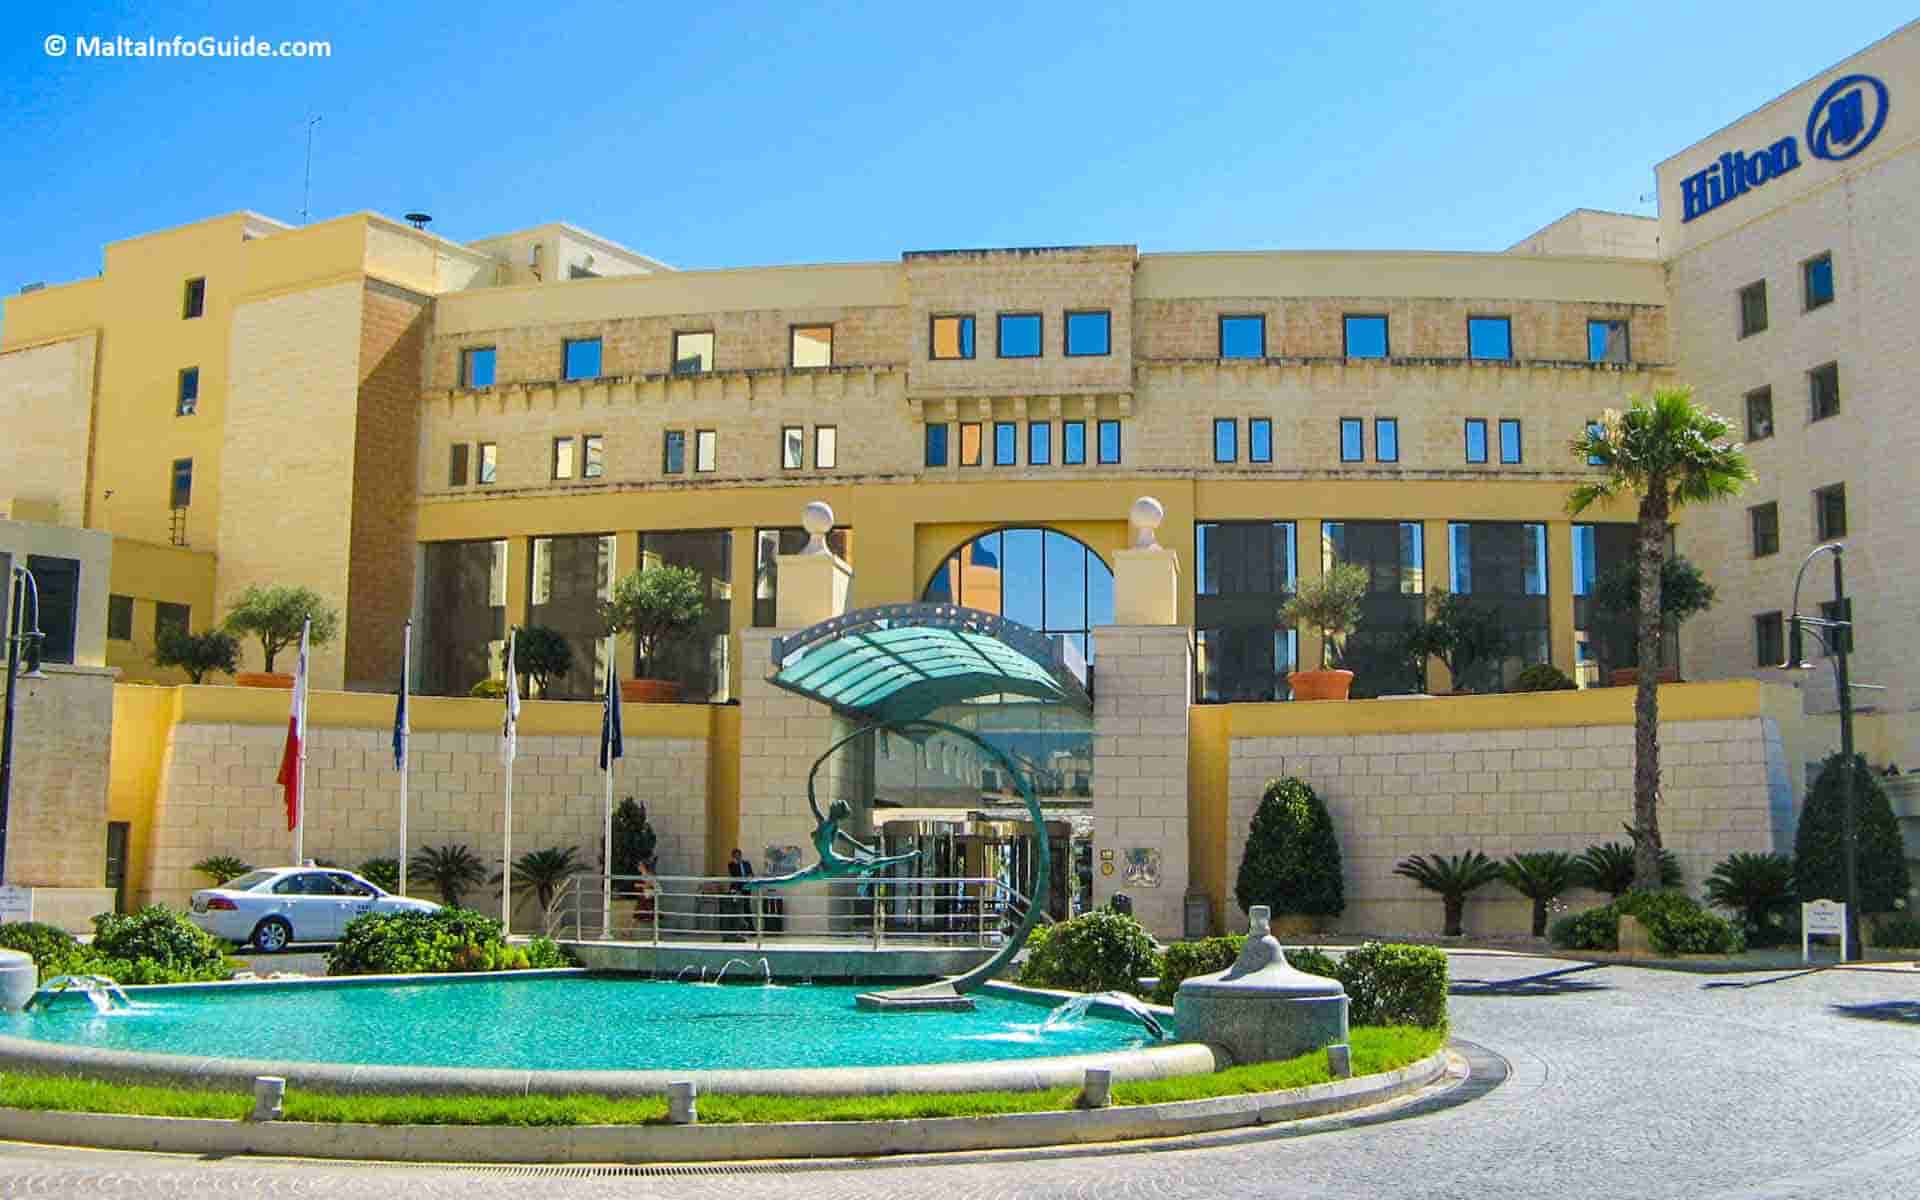 The Hilton Hotel Malta, where to stay in Malta.